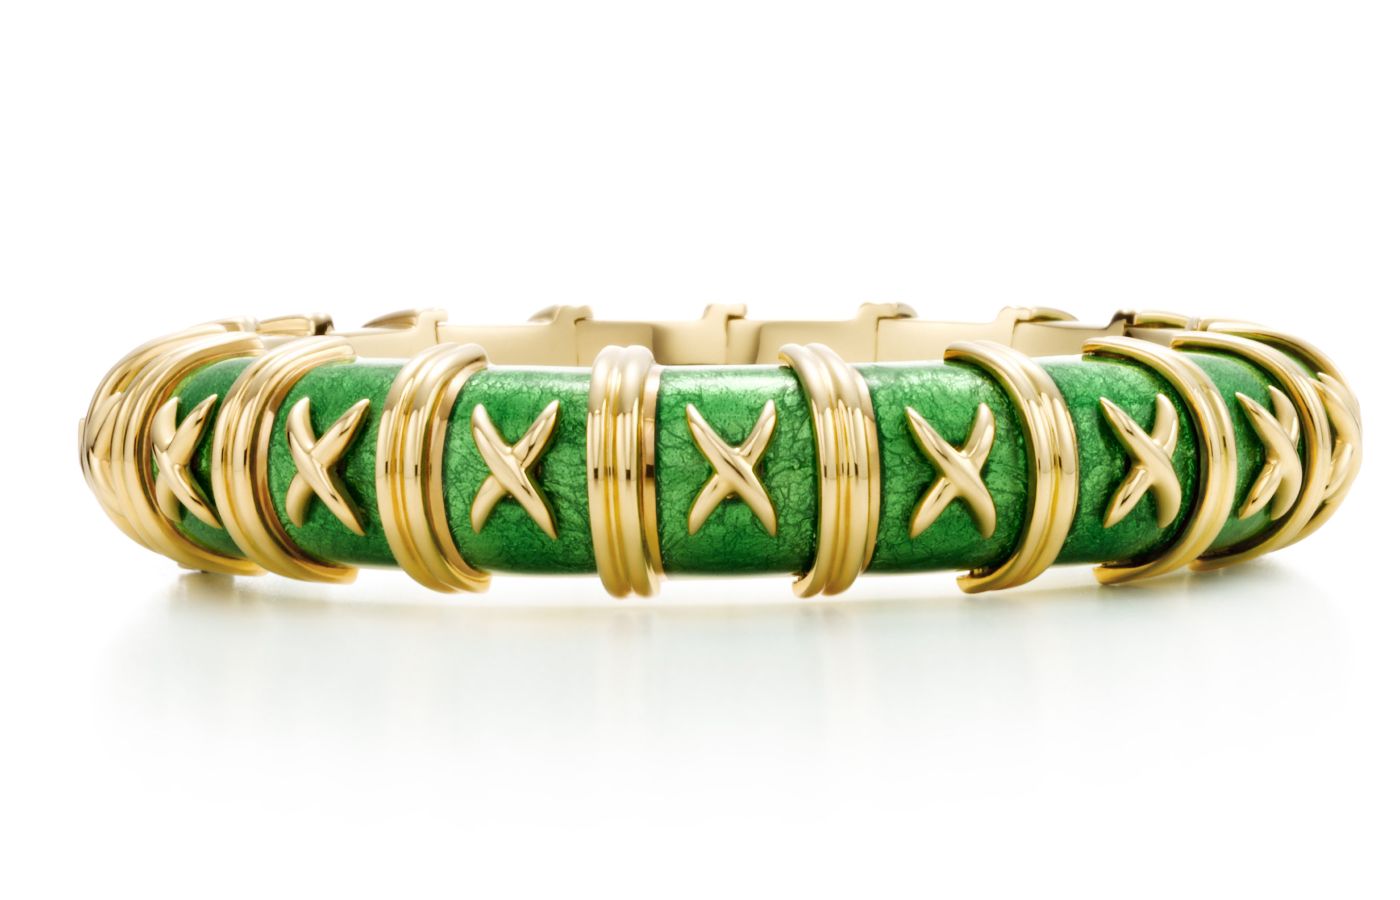 Tiffany Co green bracelet